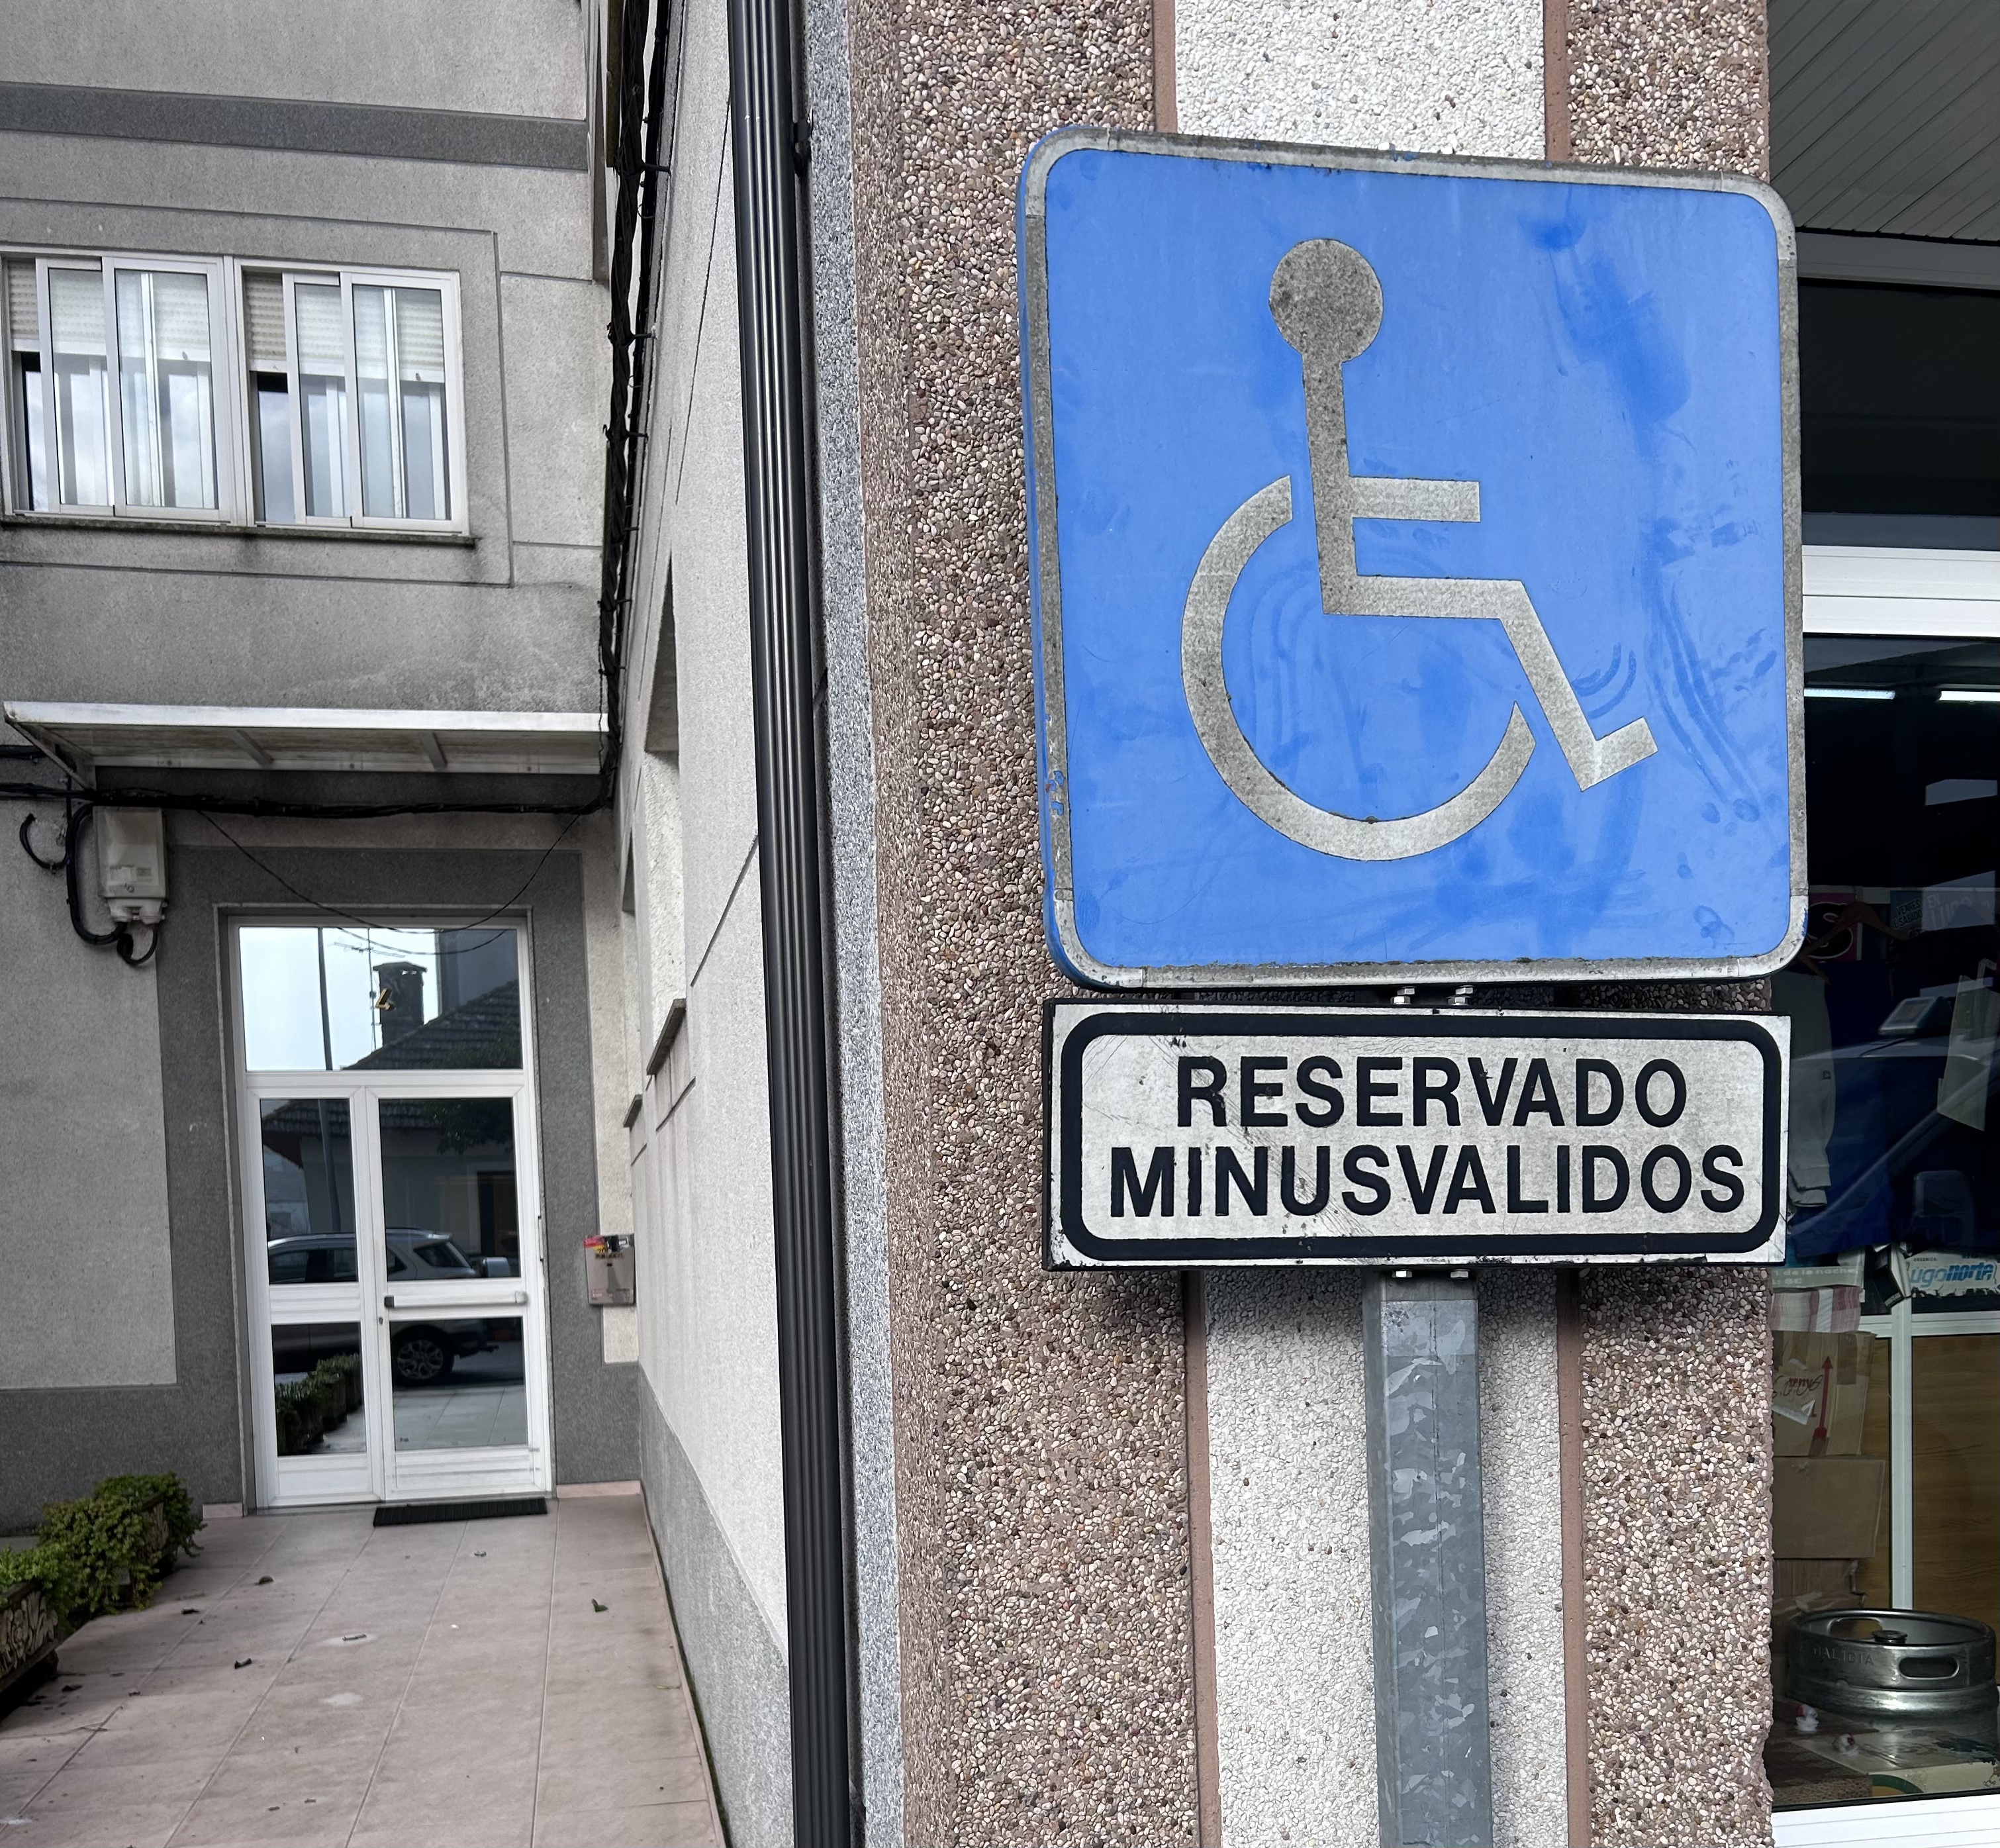 Señal vertical que identifica una plaza de aparcamiento accesible. Bajo el icono internacional de accesibilidad aparece una placa donde puede leerse: “RESERVADO MINUSVÁLIDOS”.